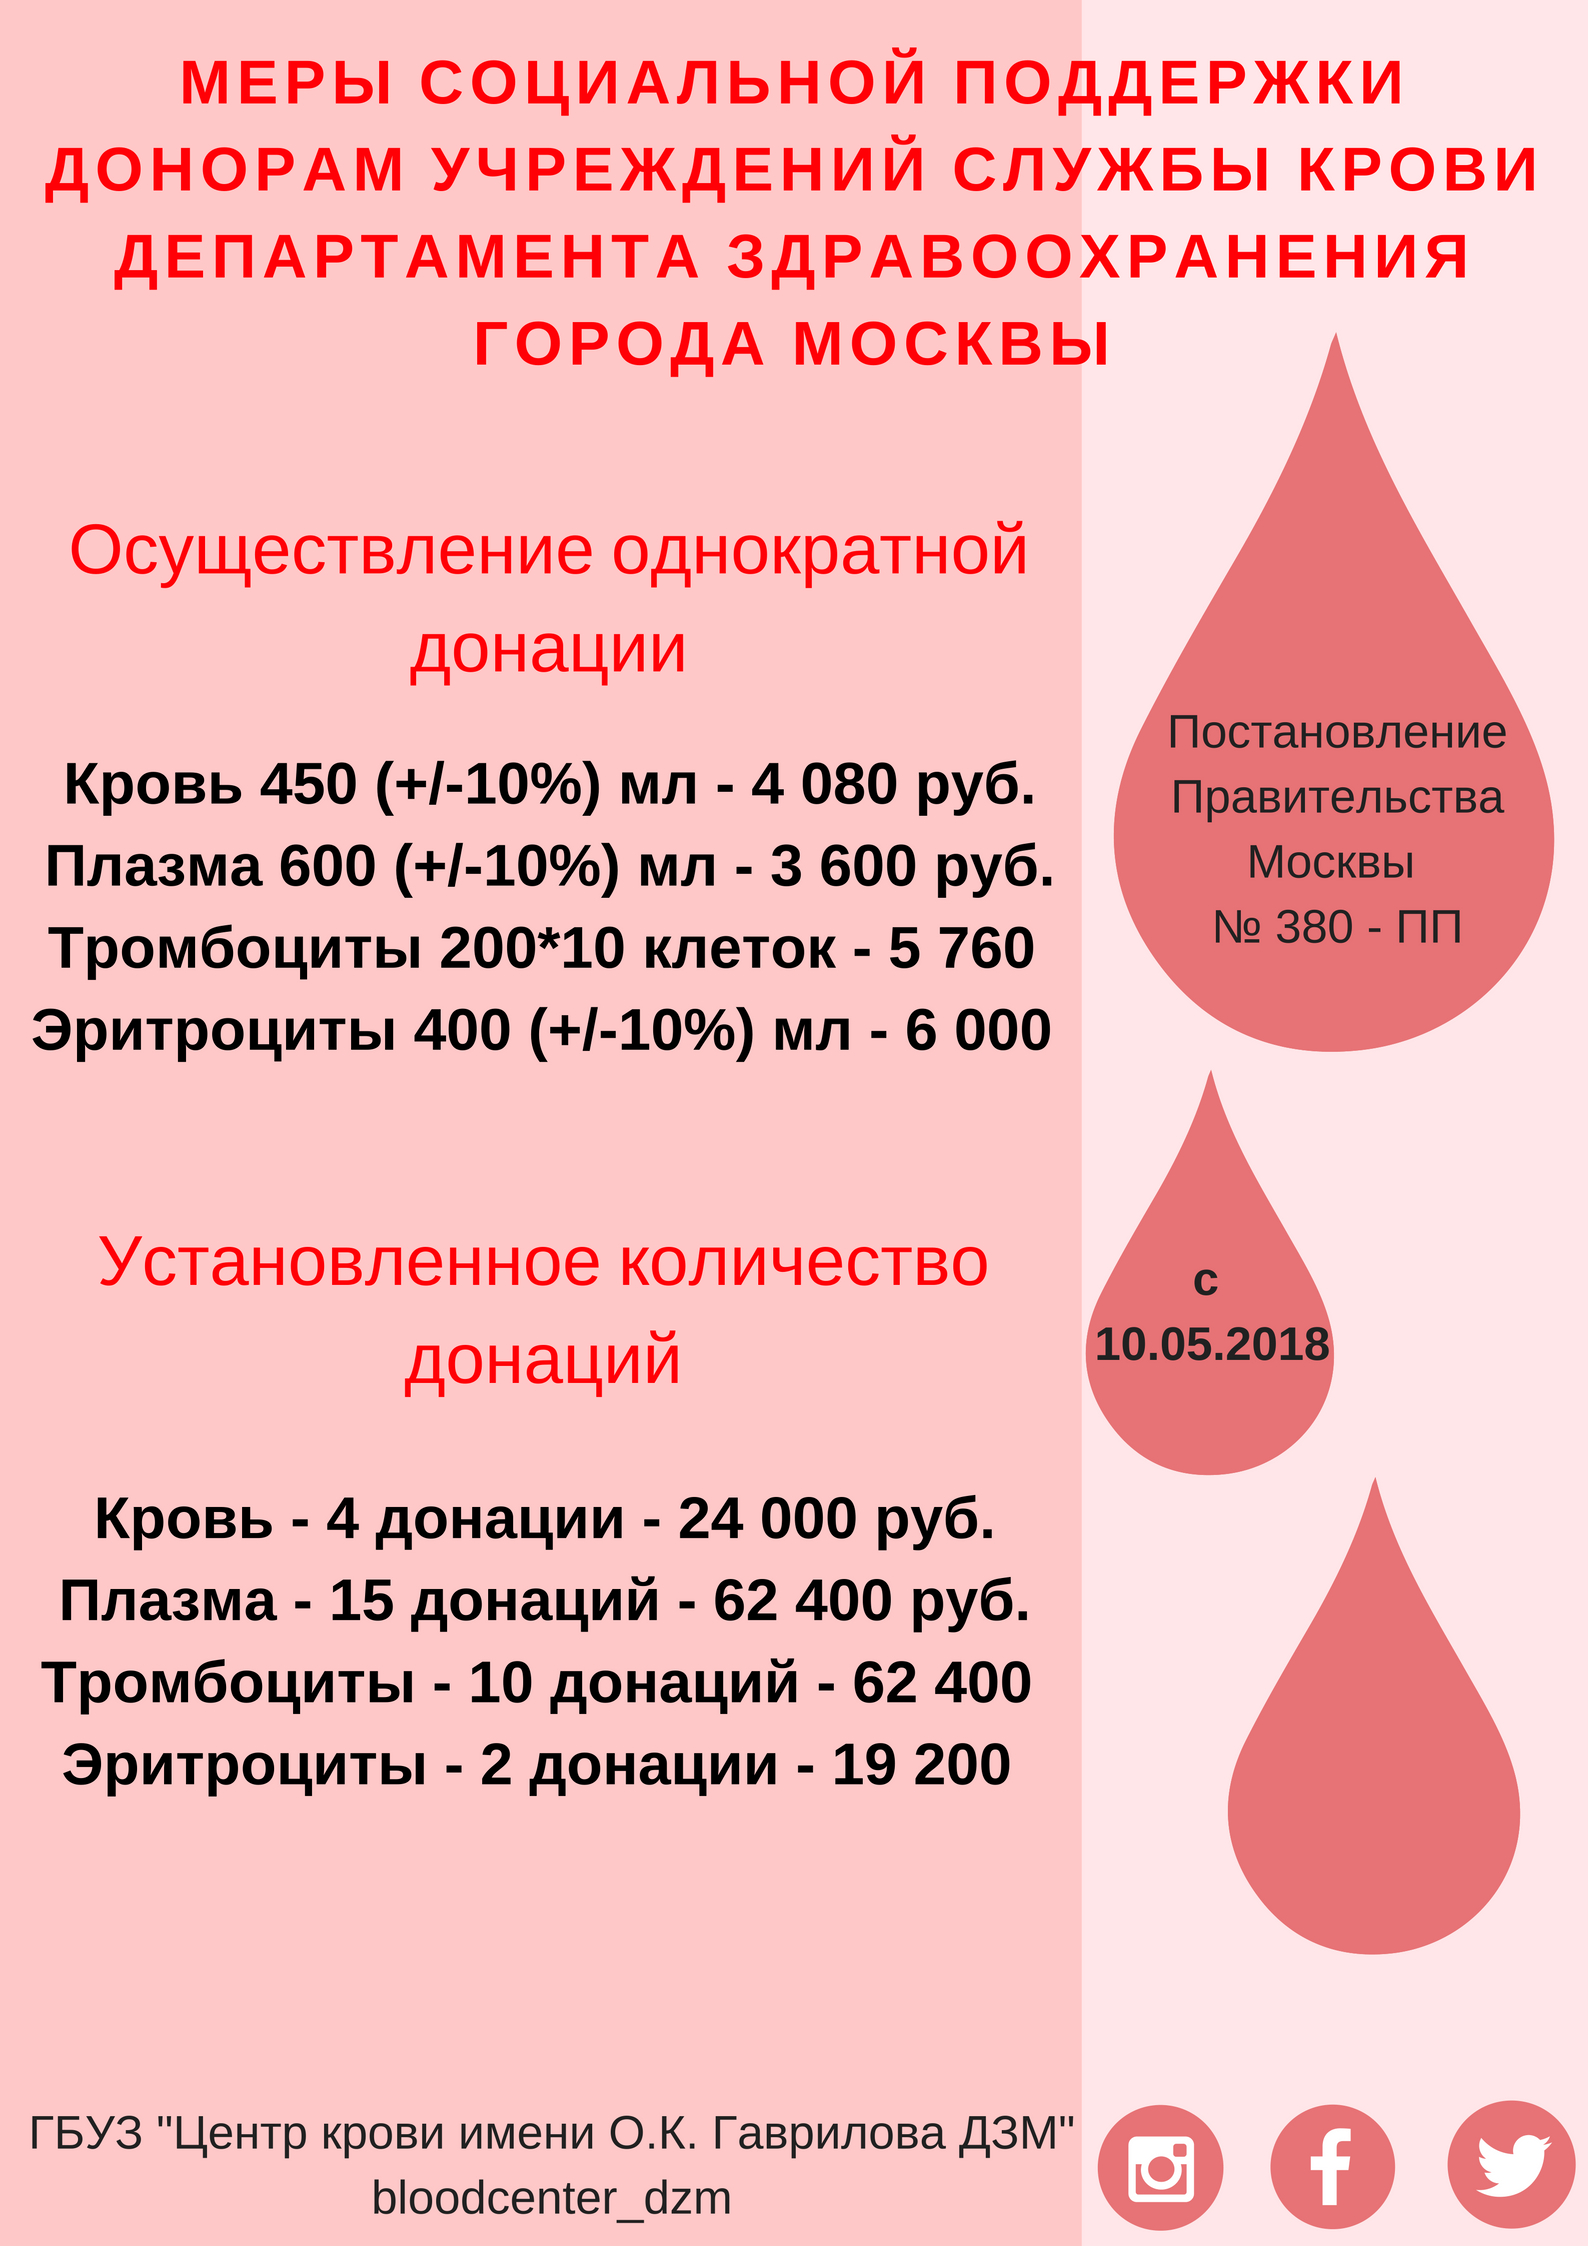 Размеры выплат донорам. Вознаграждение за донорство крови. Плата донорам за сдачу крови. Сколько платят за сдачу крови в Москве. Почётный донор Москвы льготы.